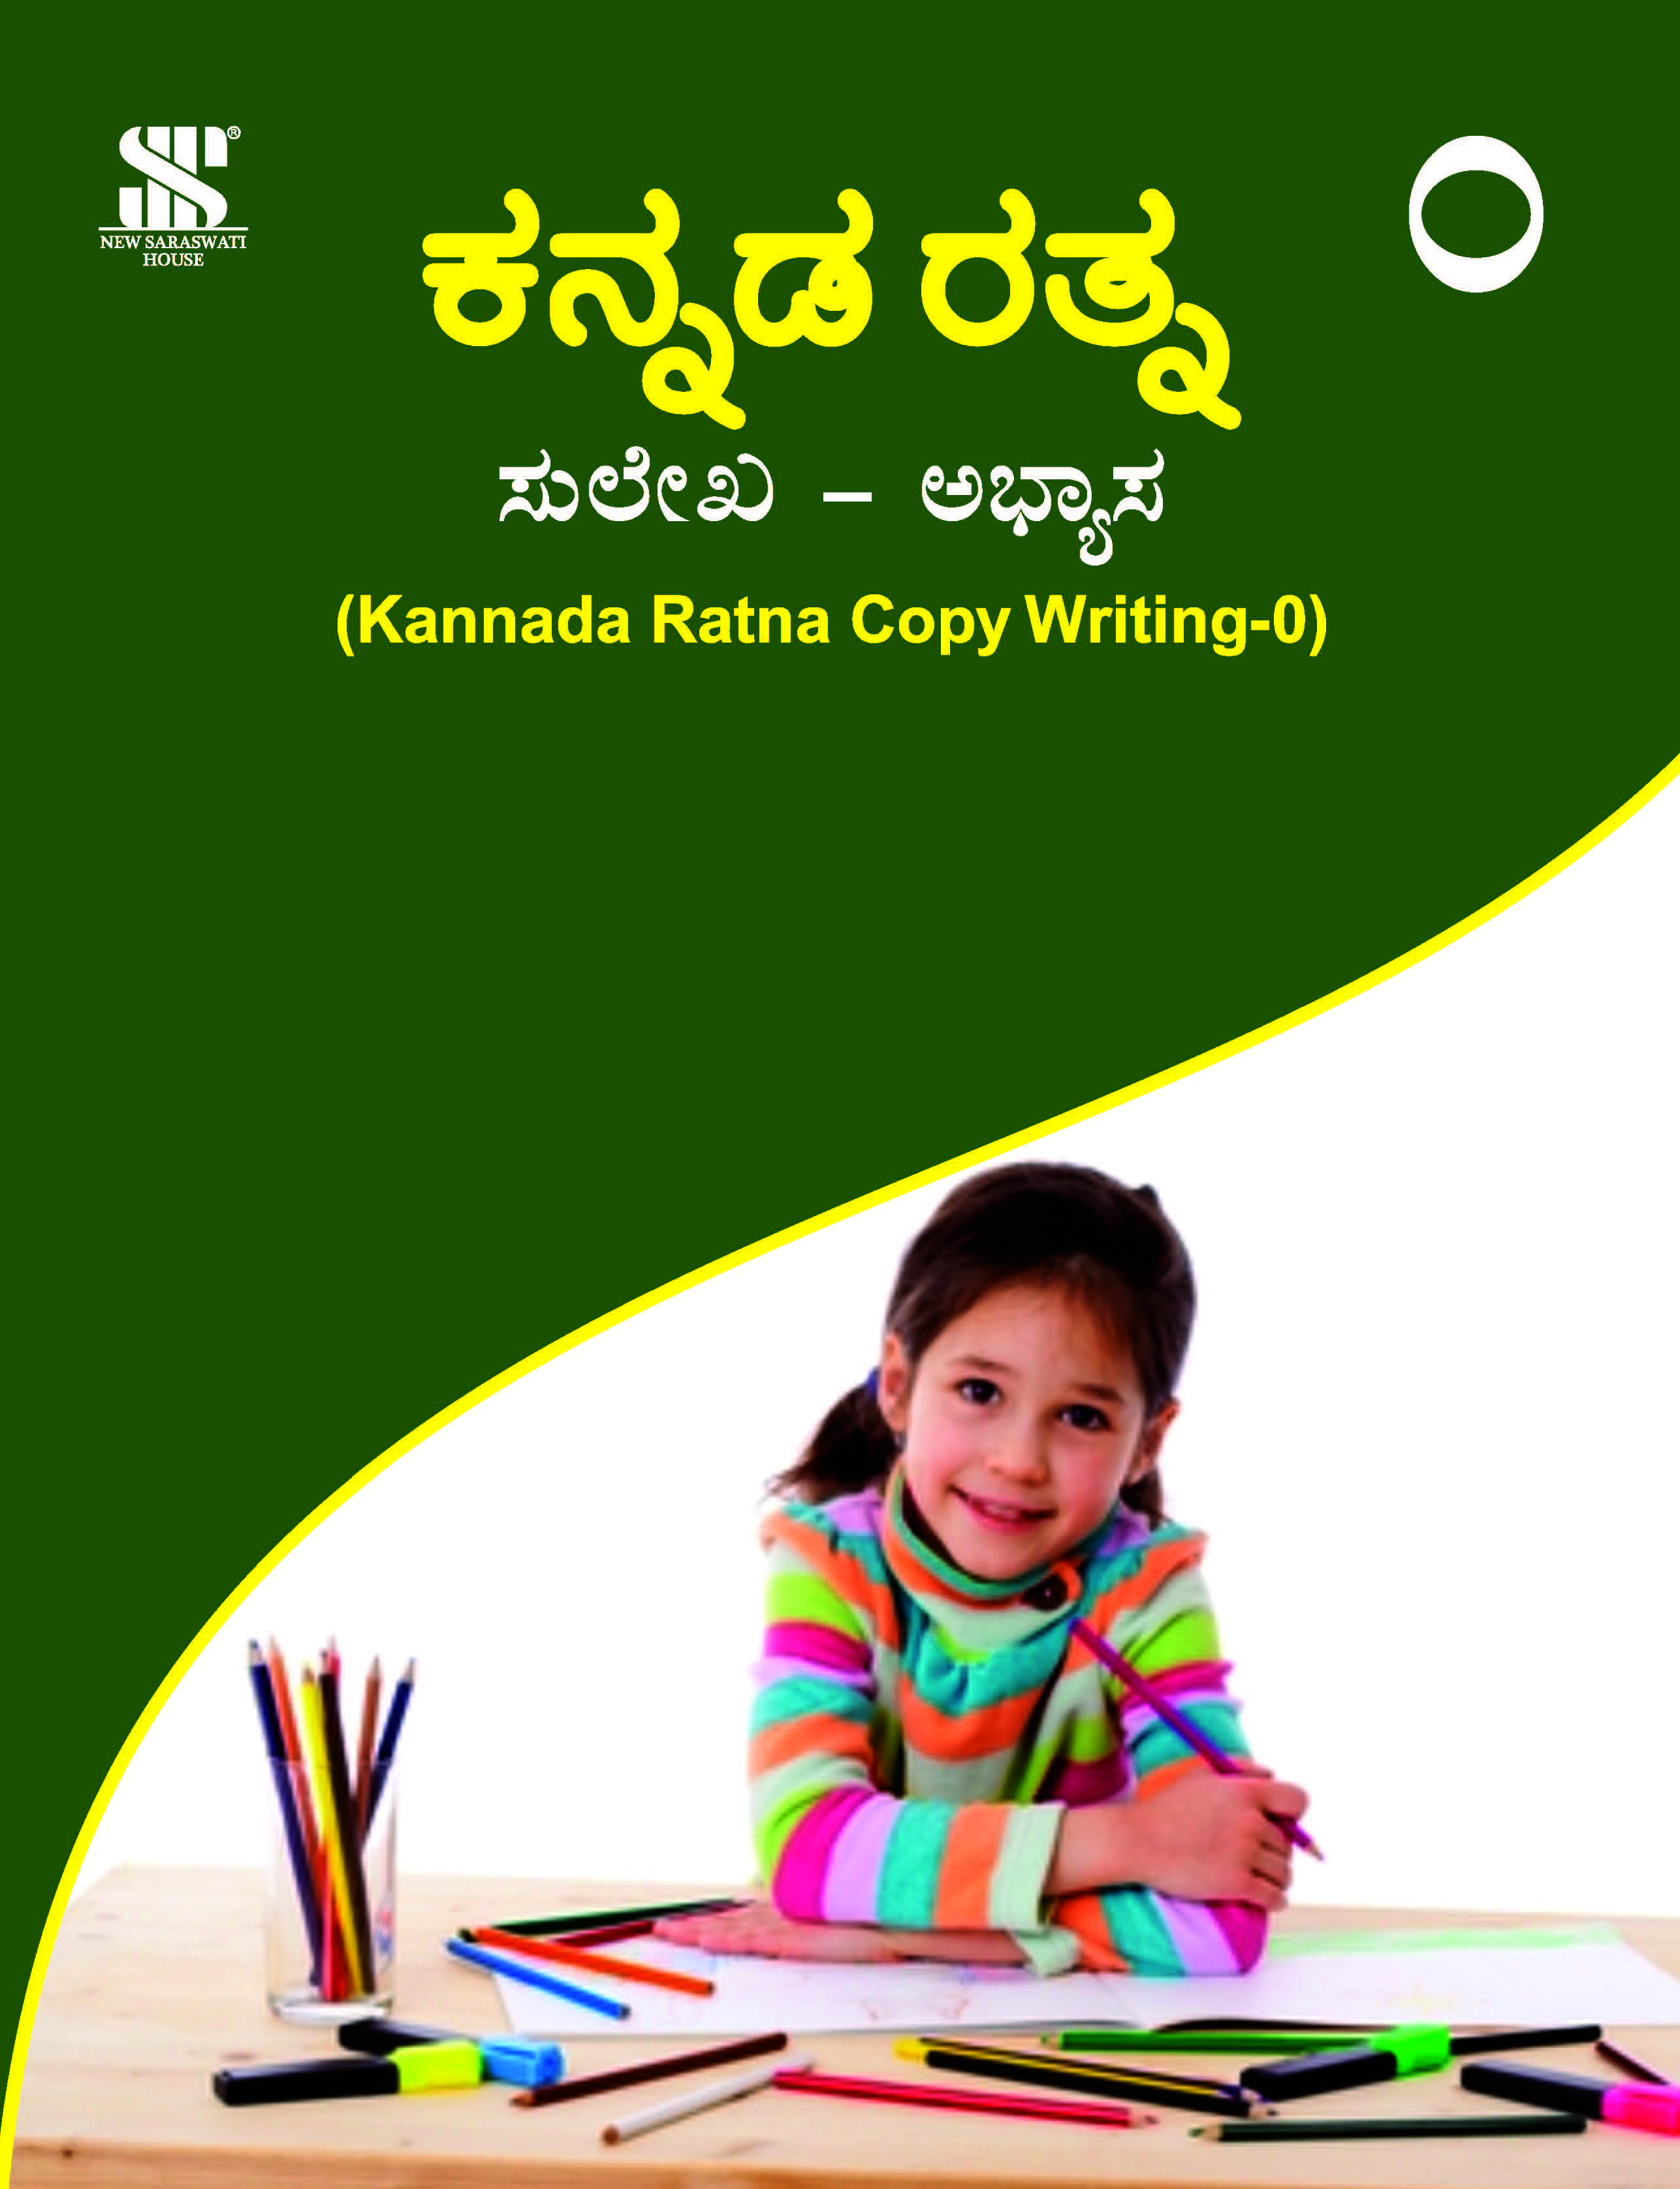 Kannada Ratna Copywriting-0